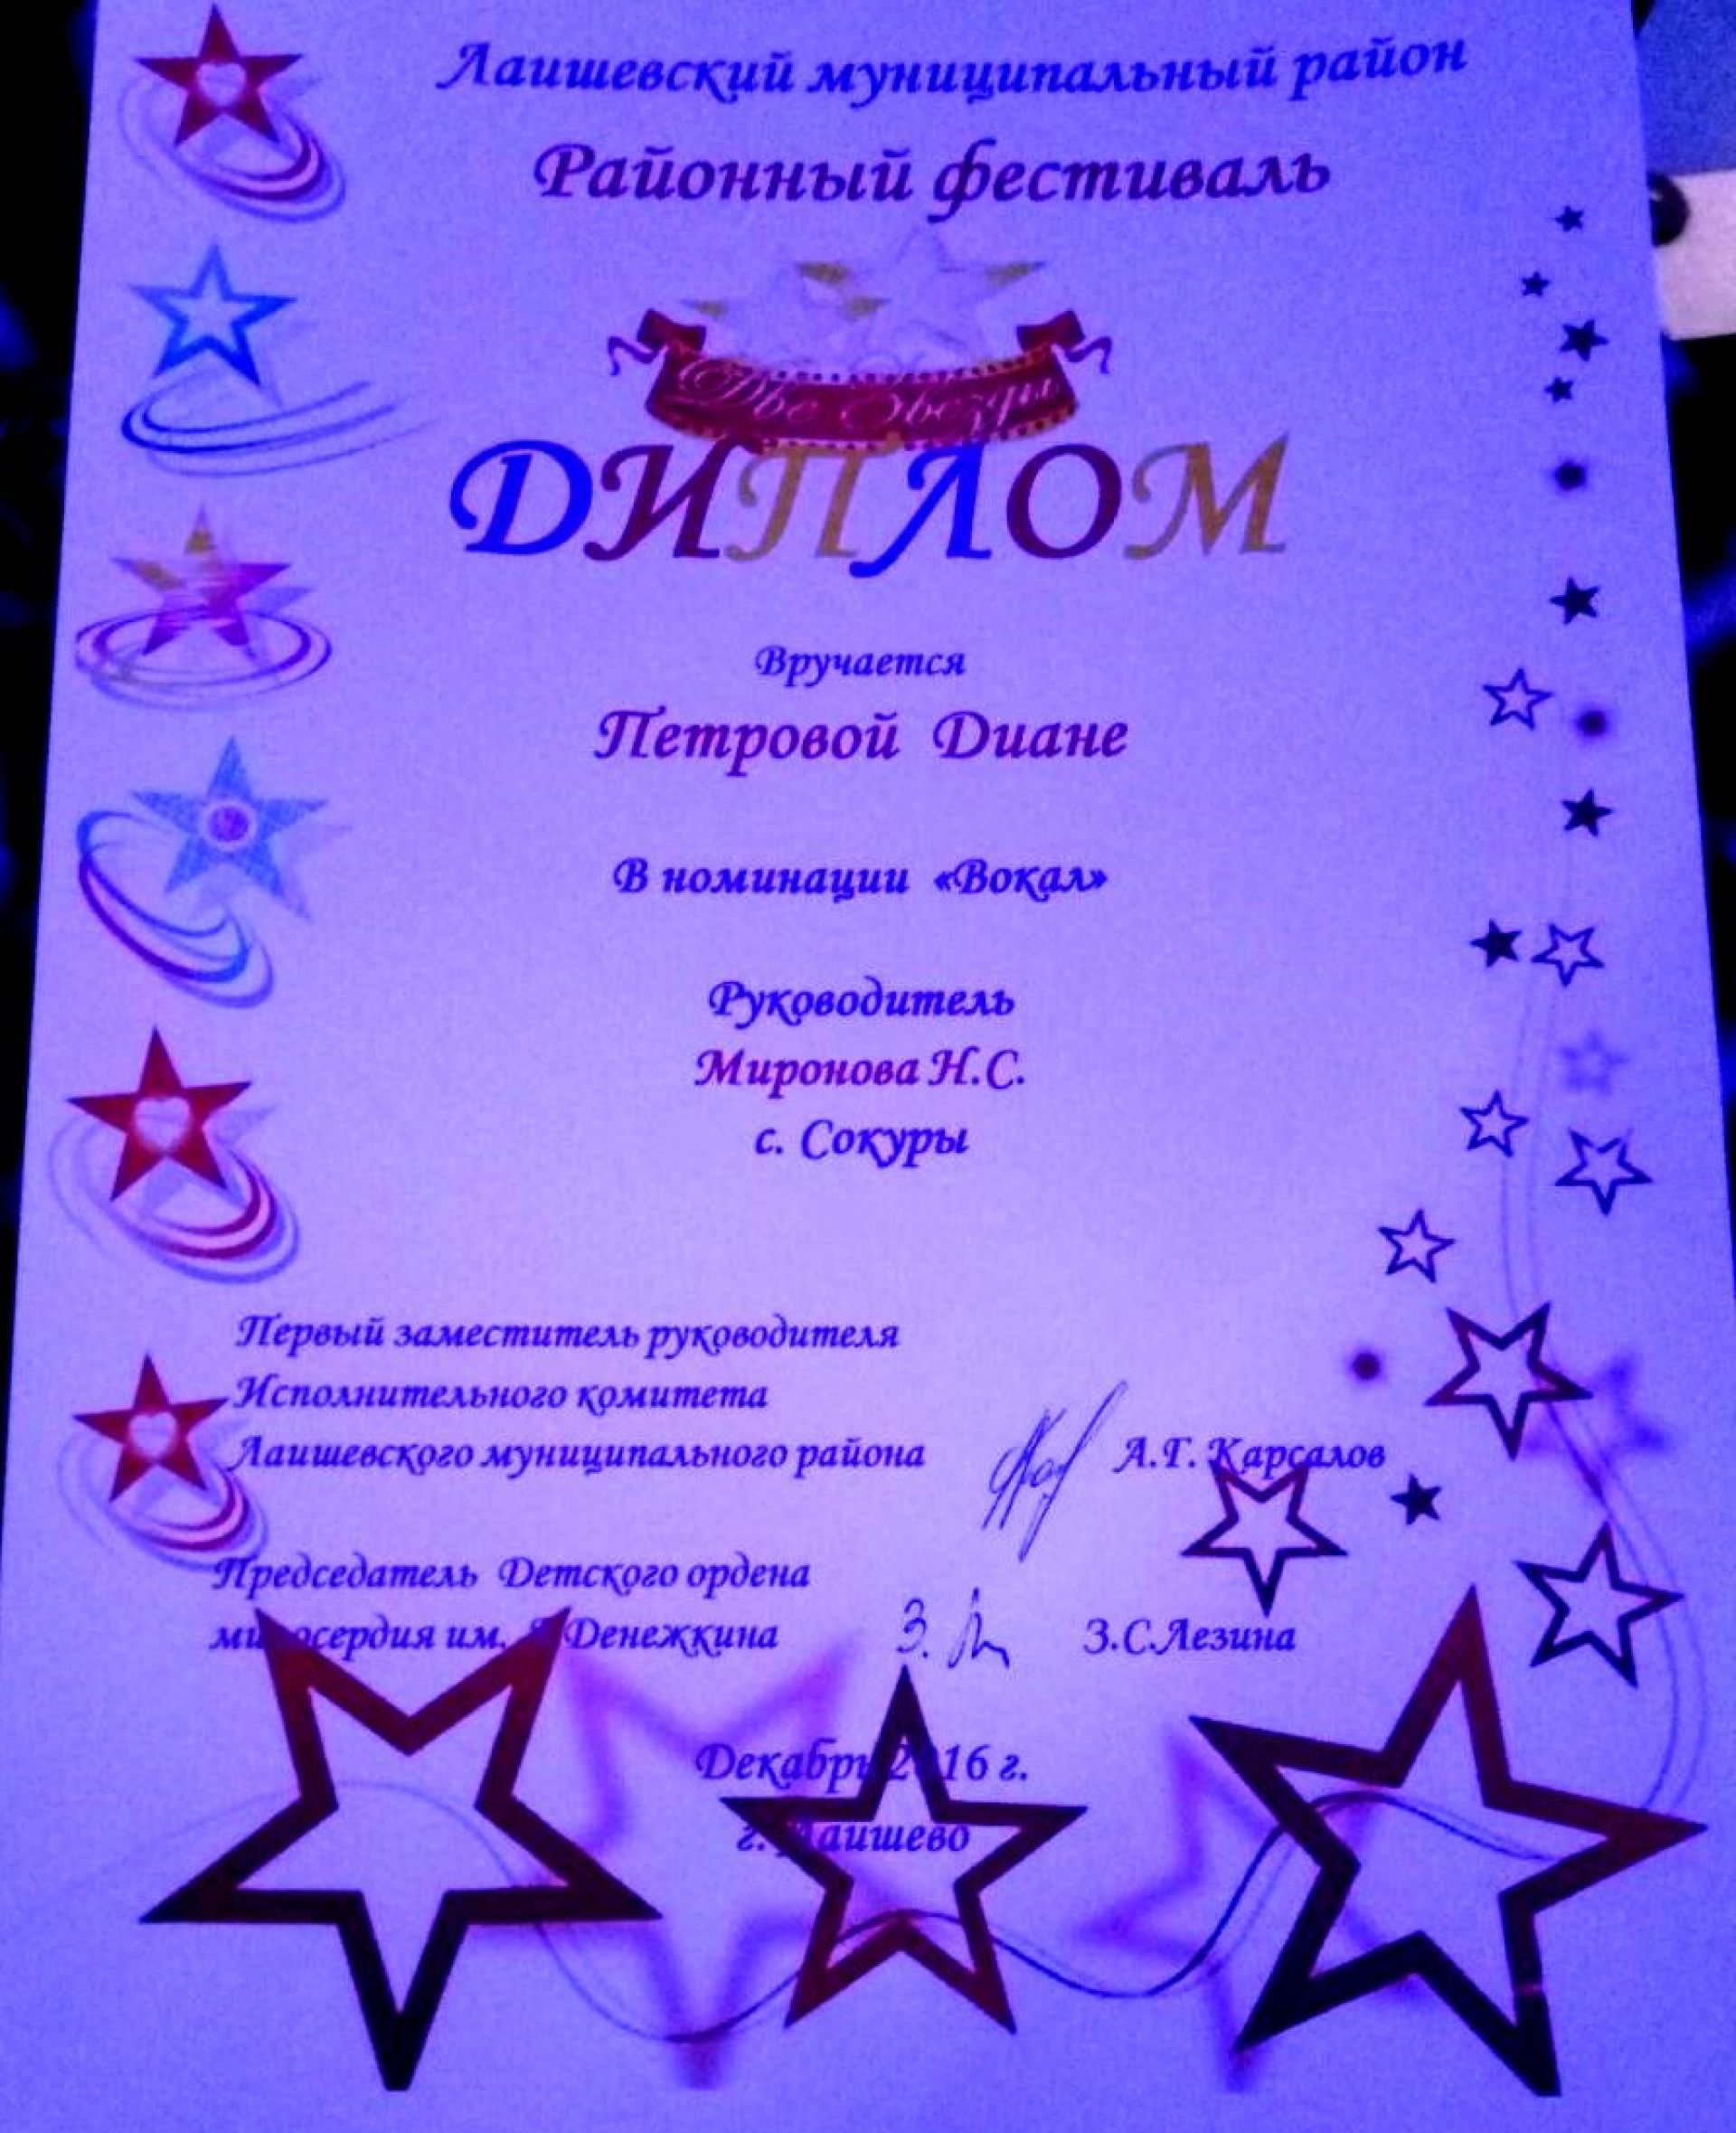 Поздравляем Диану Петрову с наградой